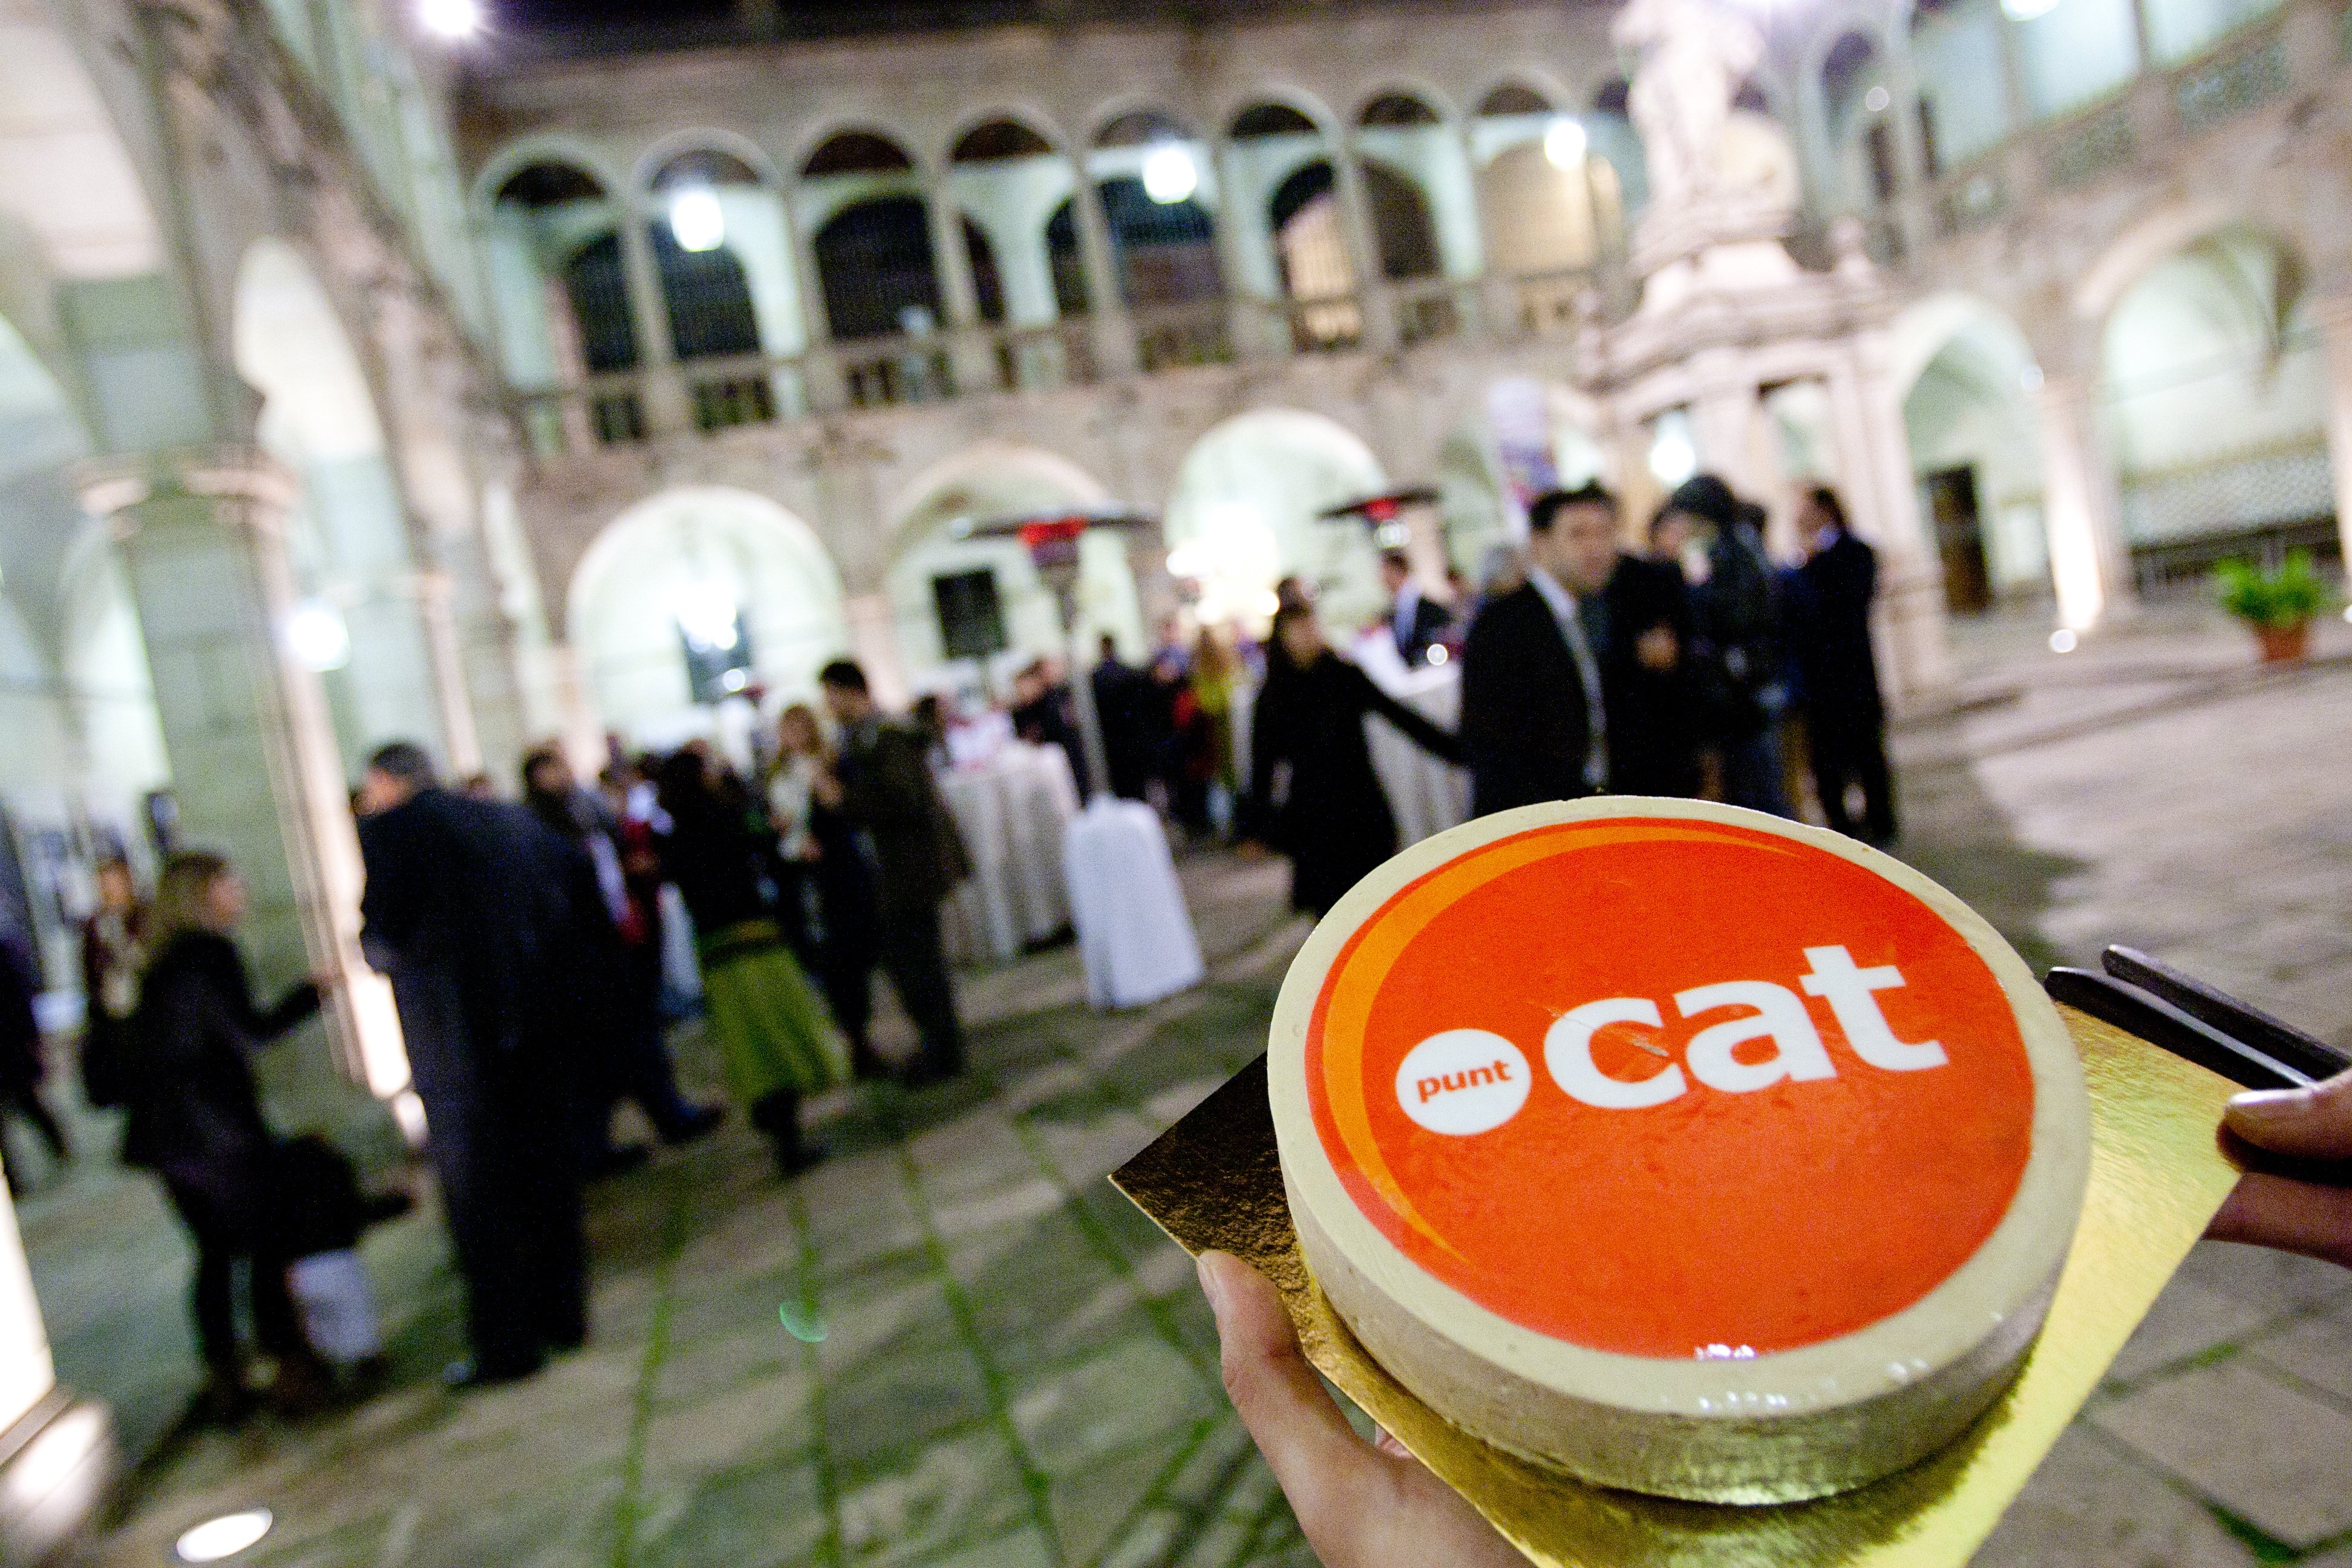 Fundació puntCAT dedicarà 160.000€ a ajuts per a projectes digitals